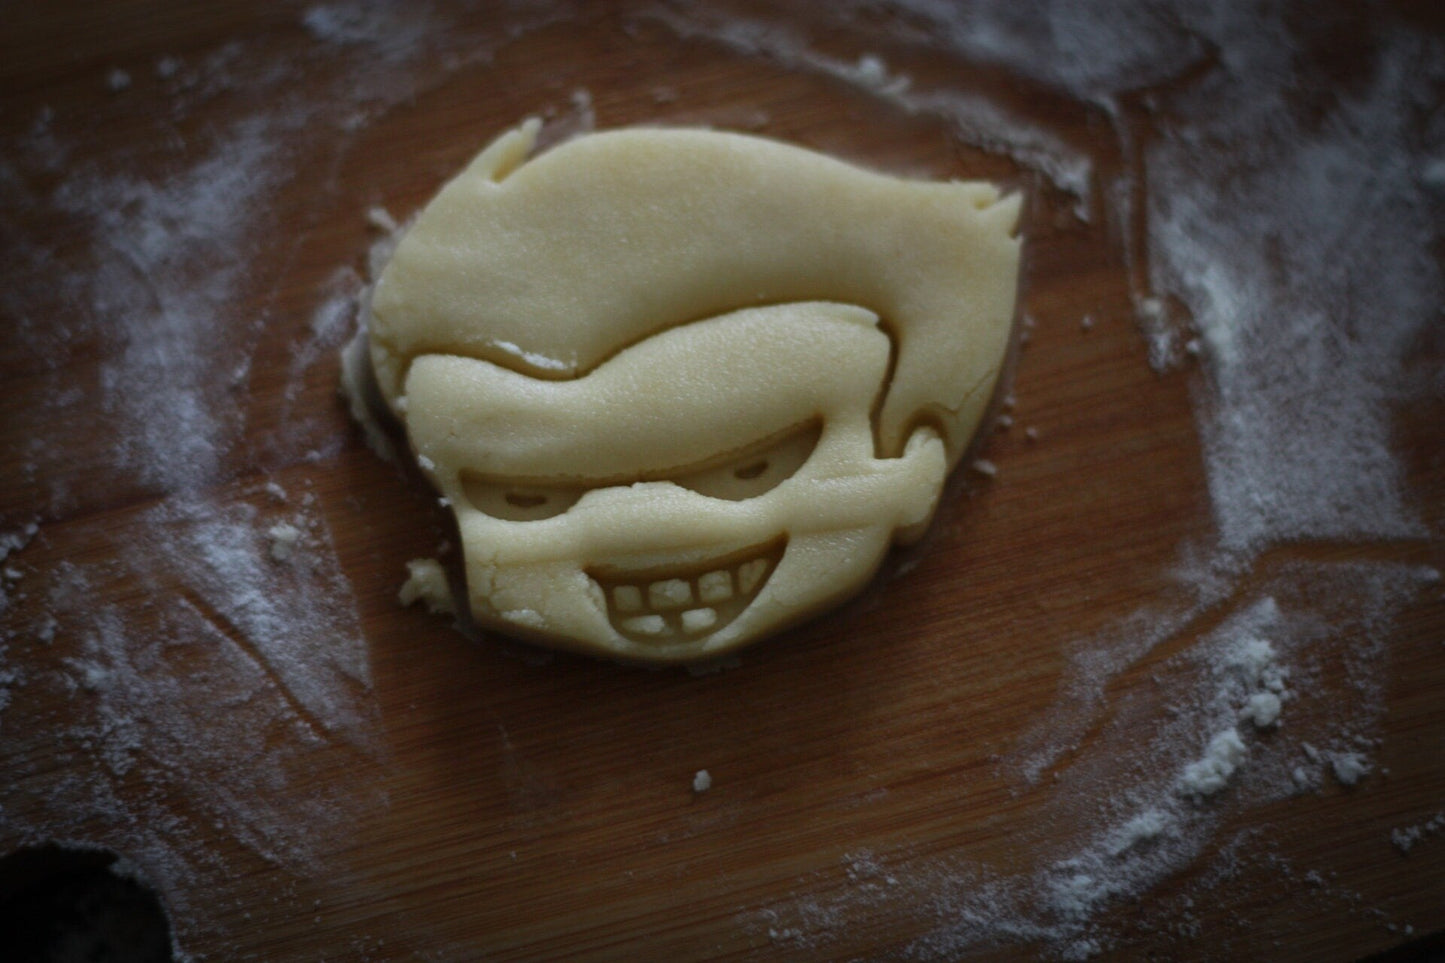 Harley Quinn Cookie Cutter and Joker | Baking Gifts |designer cutters | biscuit cutters | Cutters cookie stamp - 3DPrintProps